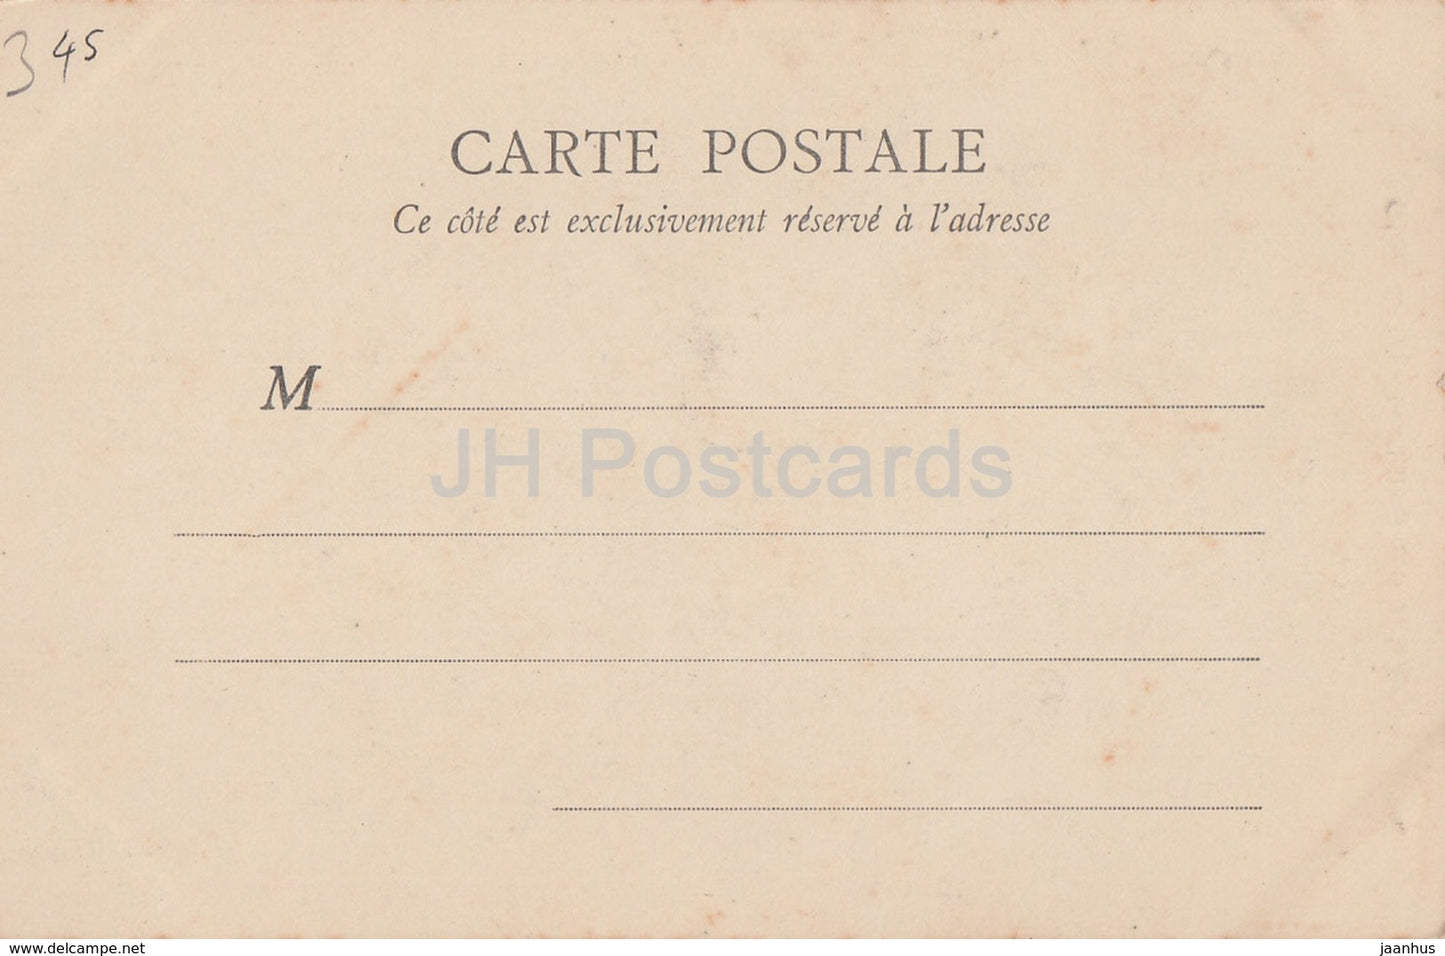 Gien - Tour du Chateau - Cote de la Prison - Schloss - 3601 - alte Postkarte - Frankreich - unbenutzt